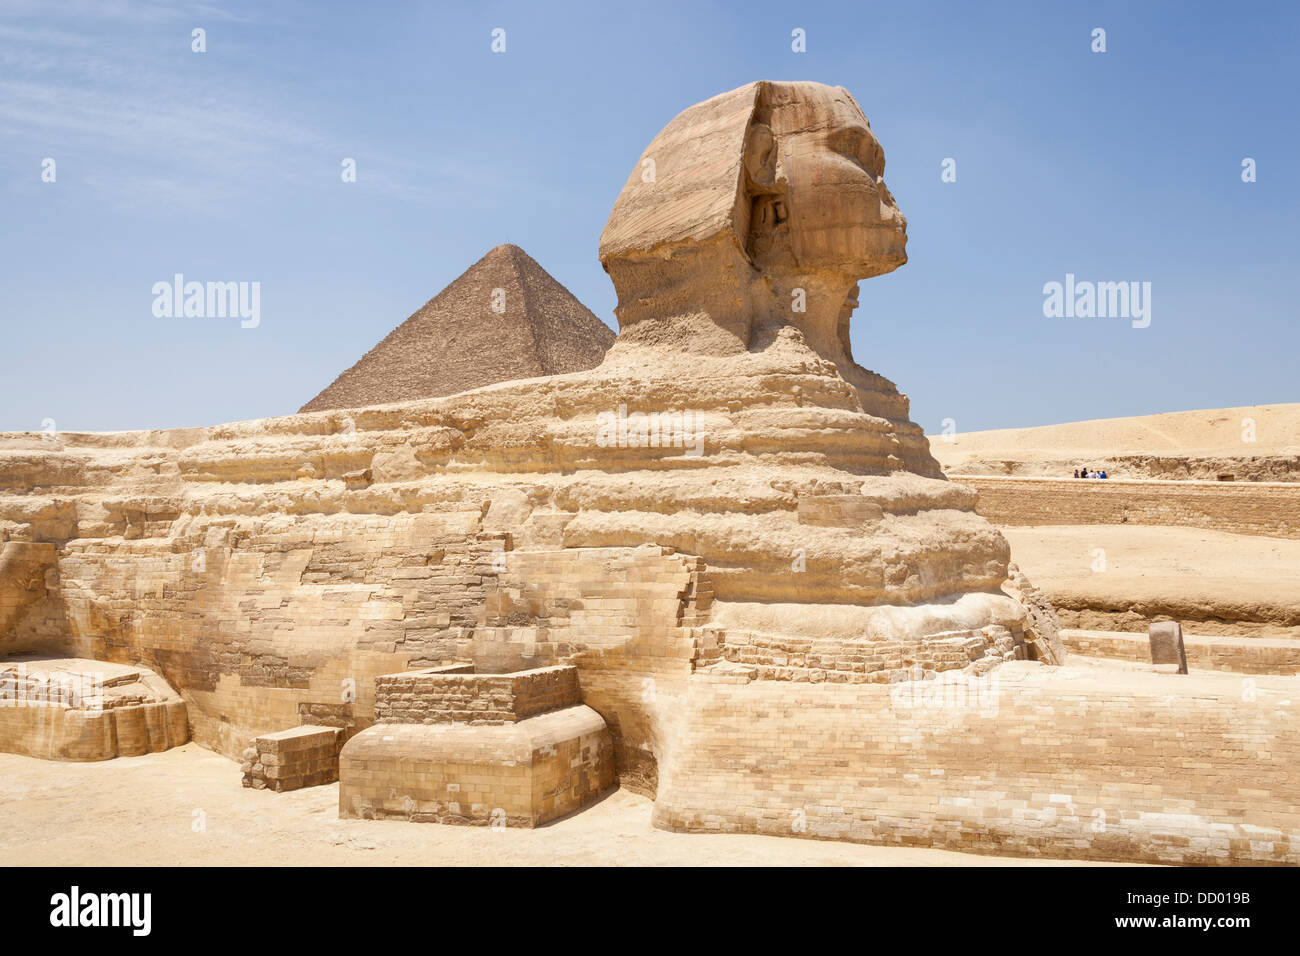 Grand Sphinx et la grande pyramide de Gizeh, également connu sous le nom de pyramide de Chéops et la pyramide de Khéops, à Gizeh, Le Caire, Egypte Banque D'Images